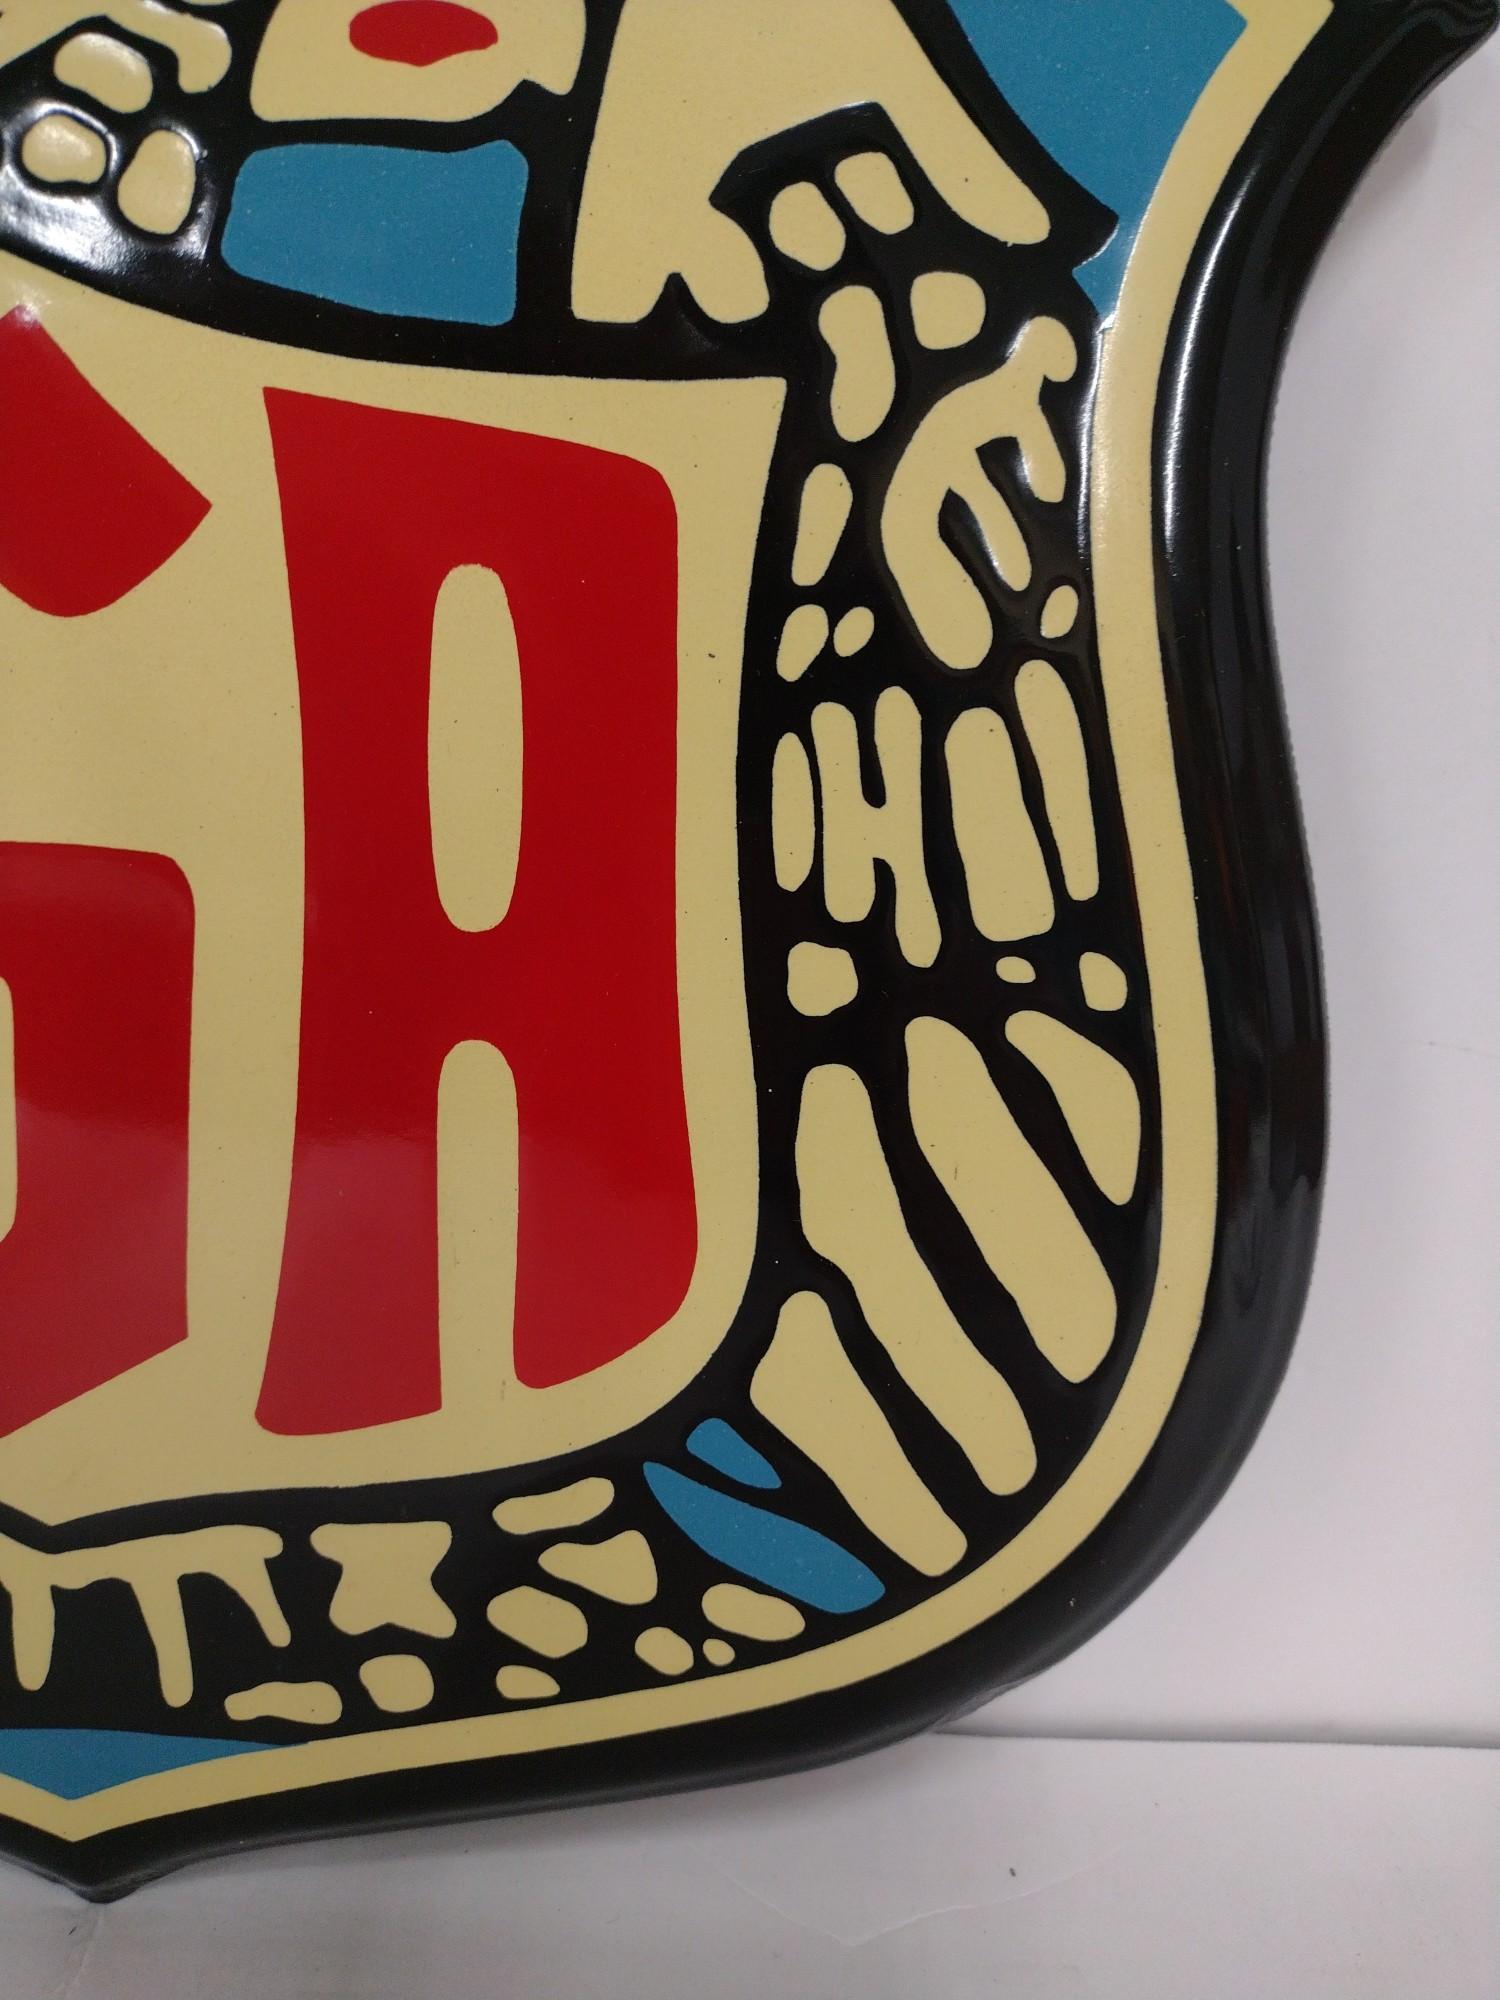 Original SSP IGA Shield